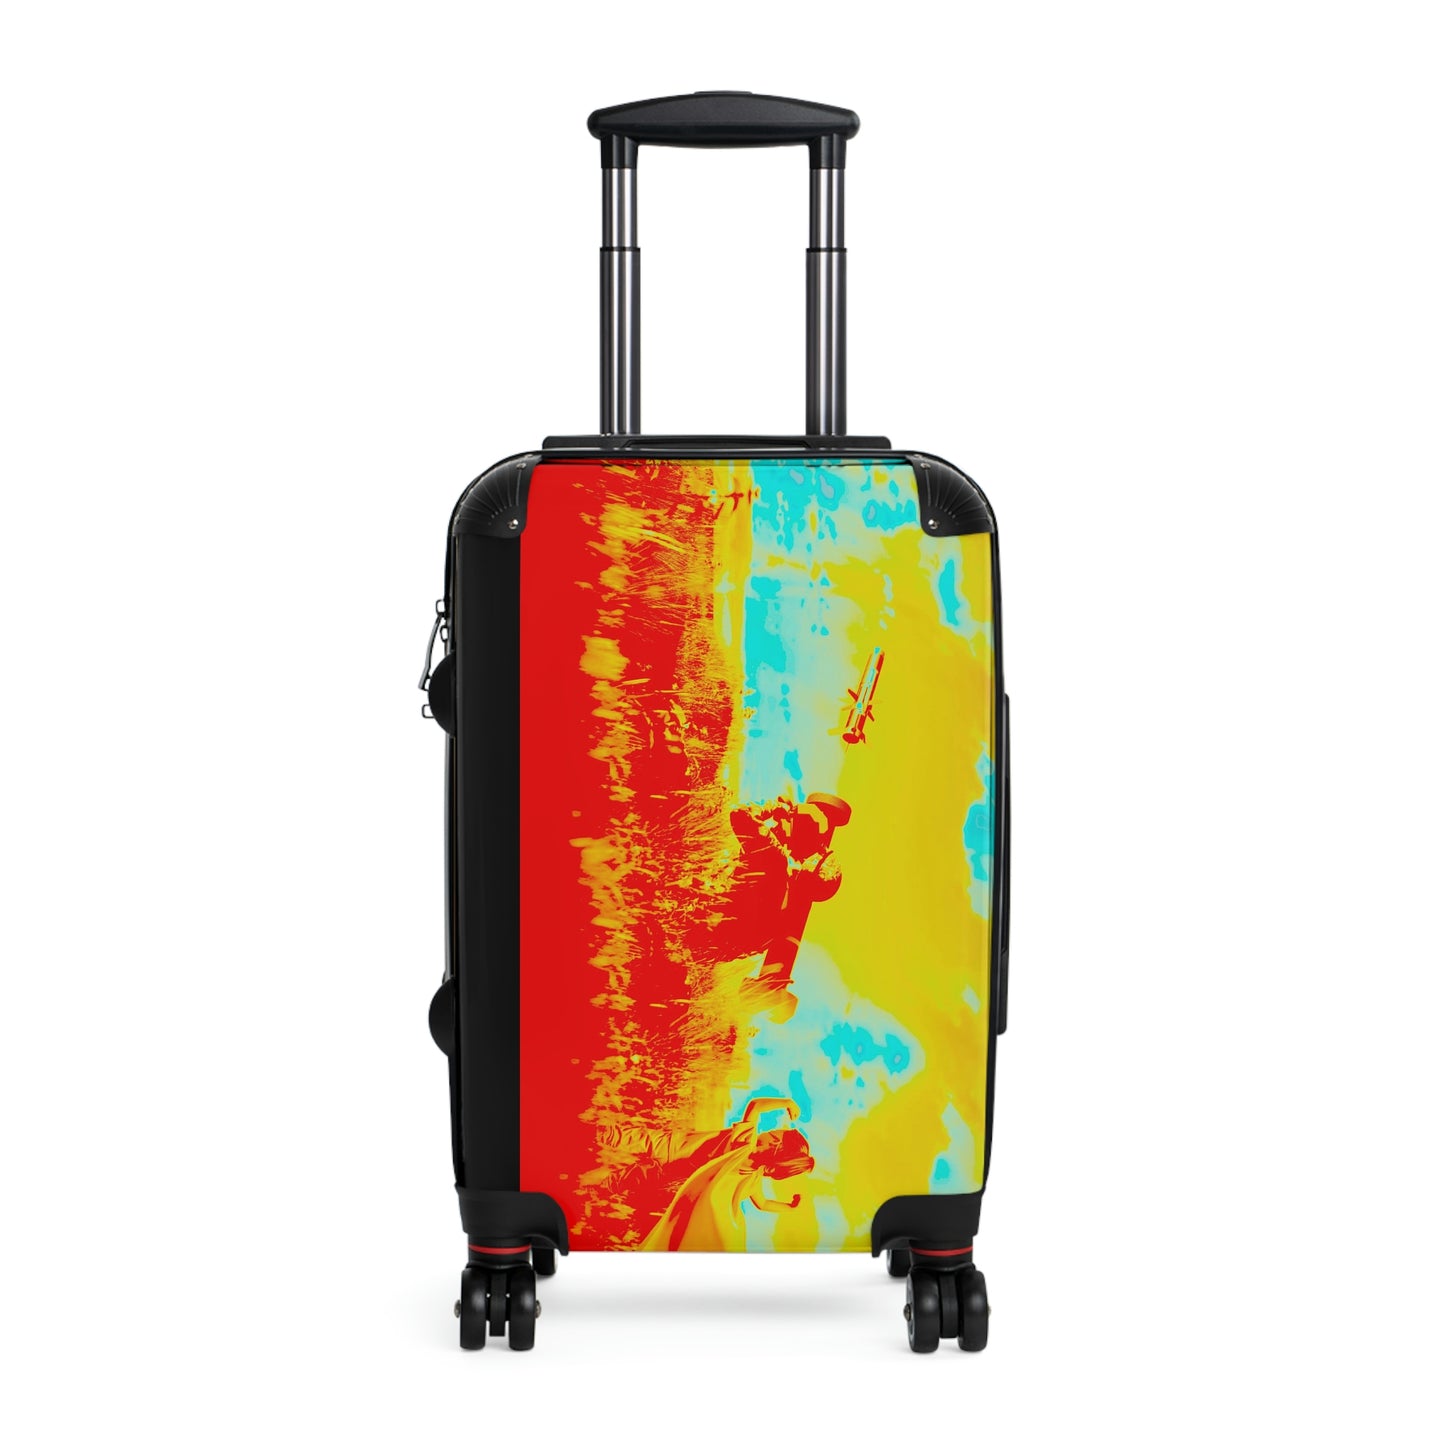 Suns Out Guns Out, Travel Unique suitcase